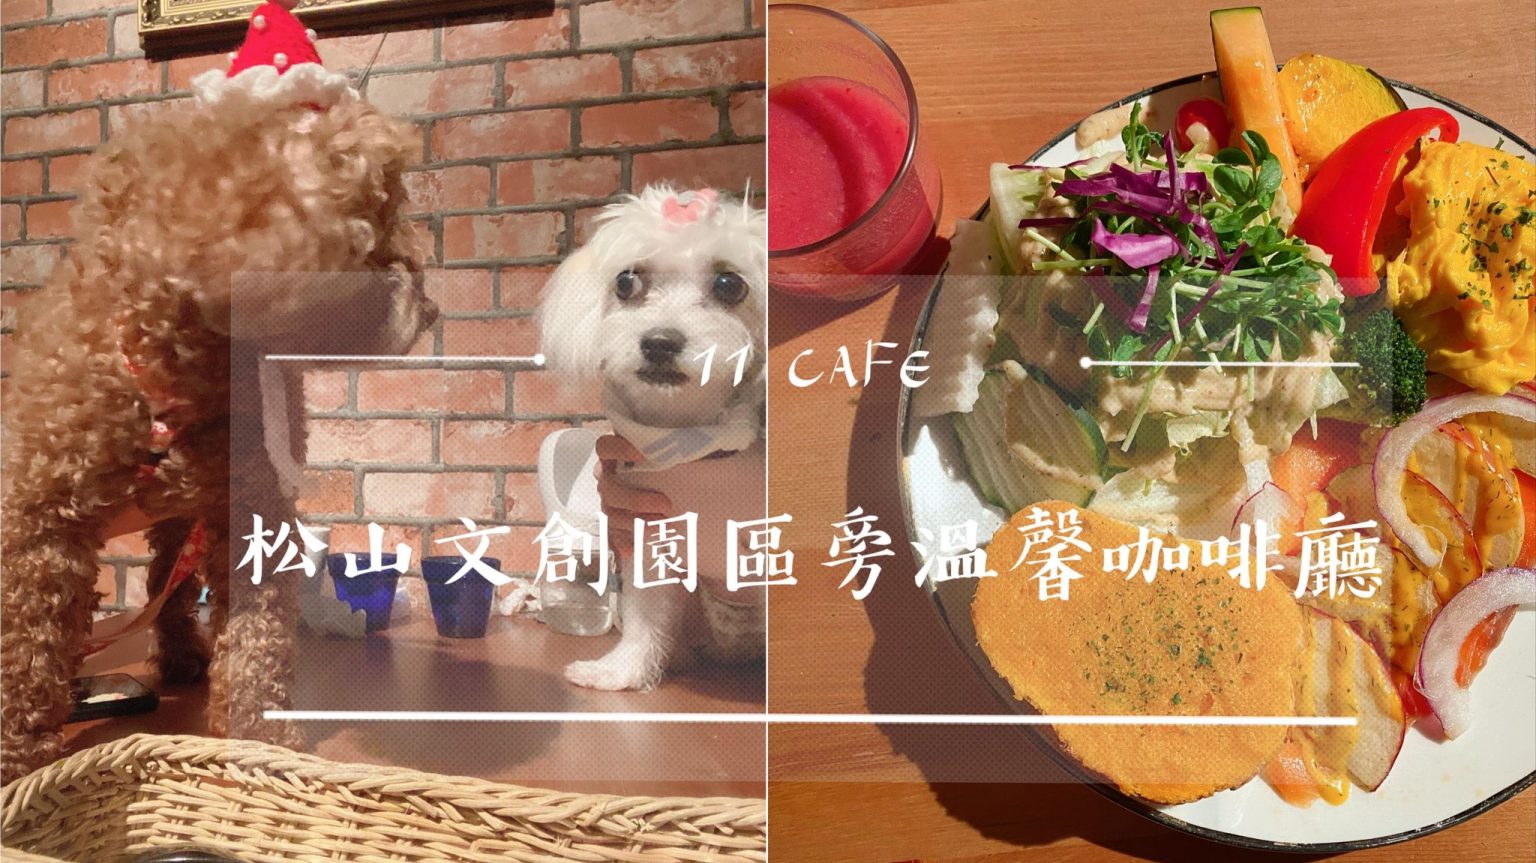 petsyoyo寵物新聞媒體平台-11 CAFE 台北松山寵物友善餐廳 嚕咪醬的玩樂生活